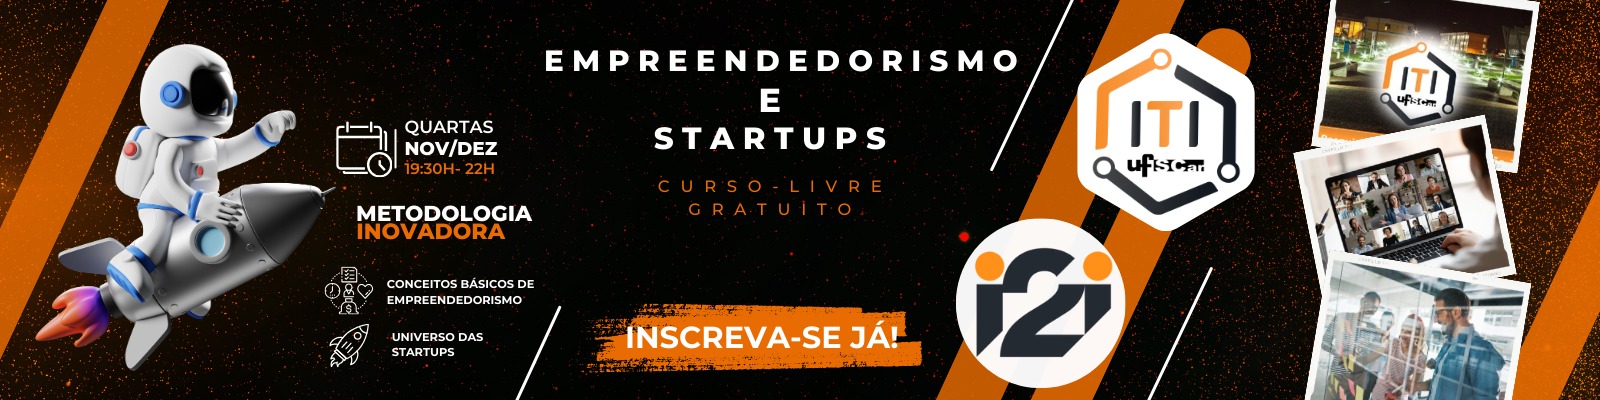 Curso-Livre Gratuito "Empreendedorismo e Startups": Inscrições até 30/10